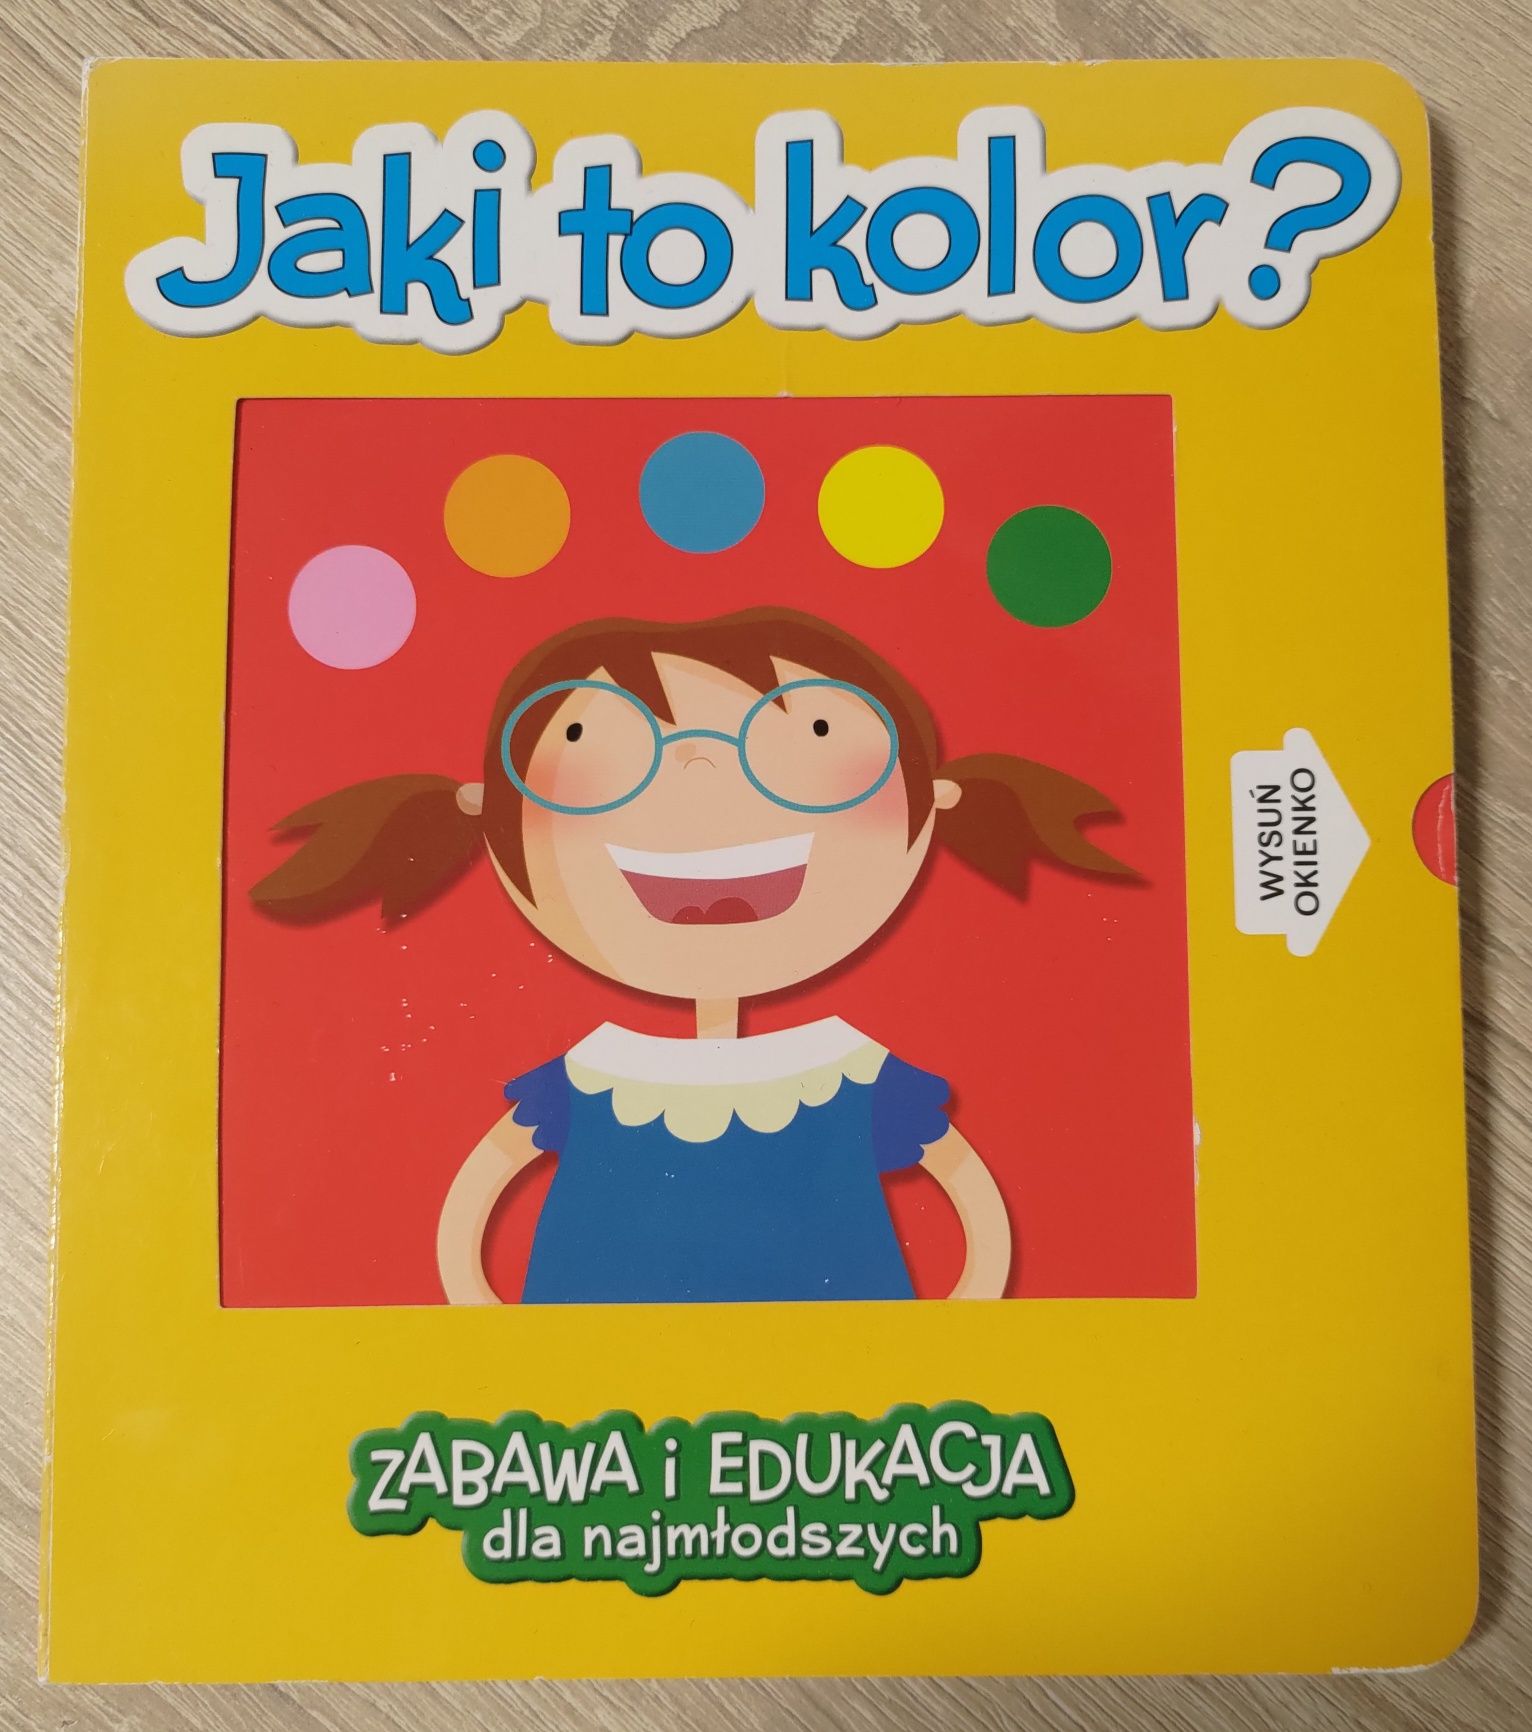 Jaki to kolor - książka edukacyjna